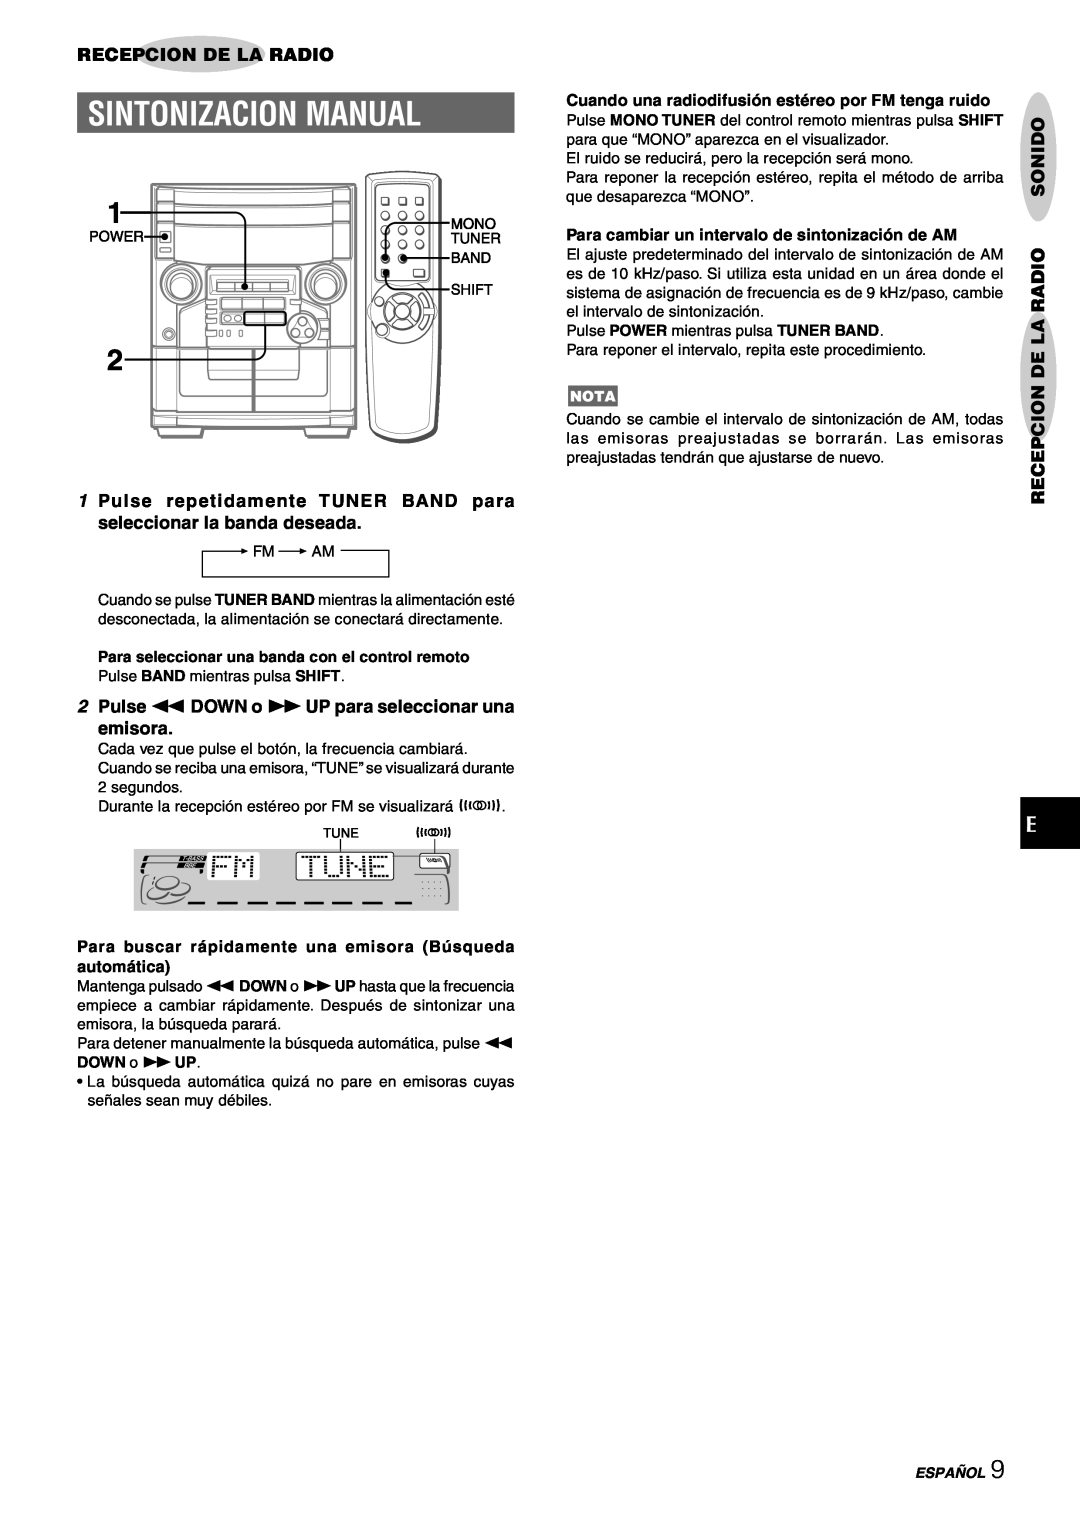 Aiwa CX-NAJ54 manual Sintonizacion Manual, Recepcion De La Radio, 2Pulse fDOWN o gUP para seleccionar una emisora, Español 